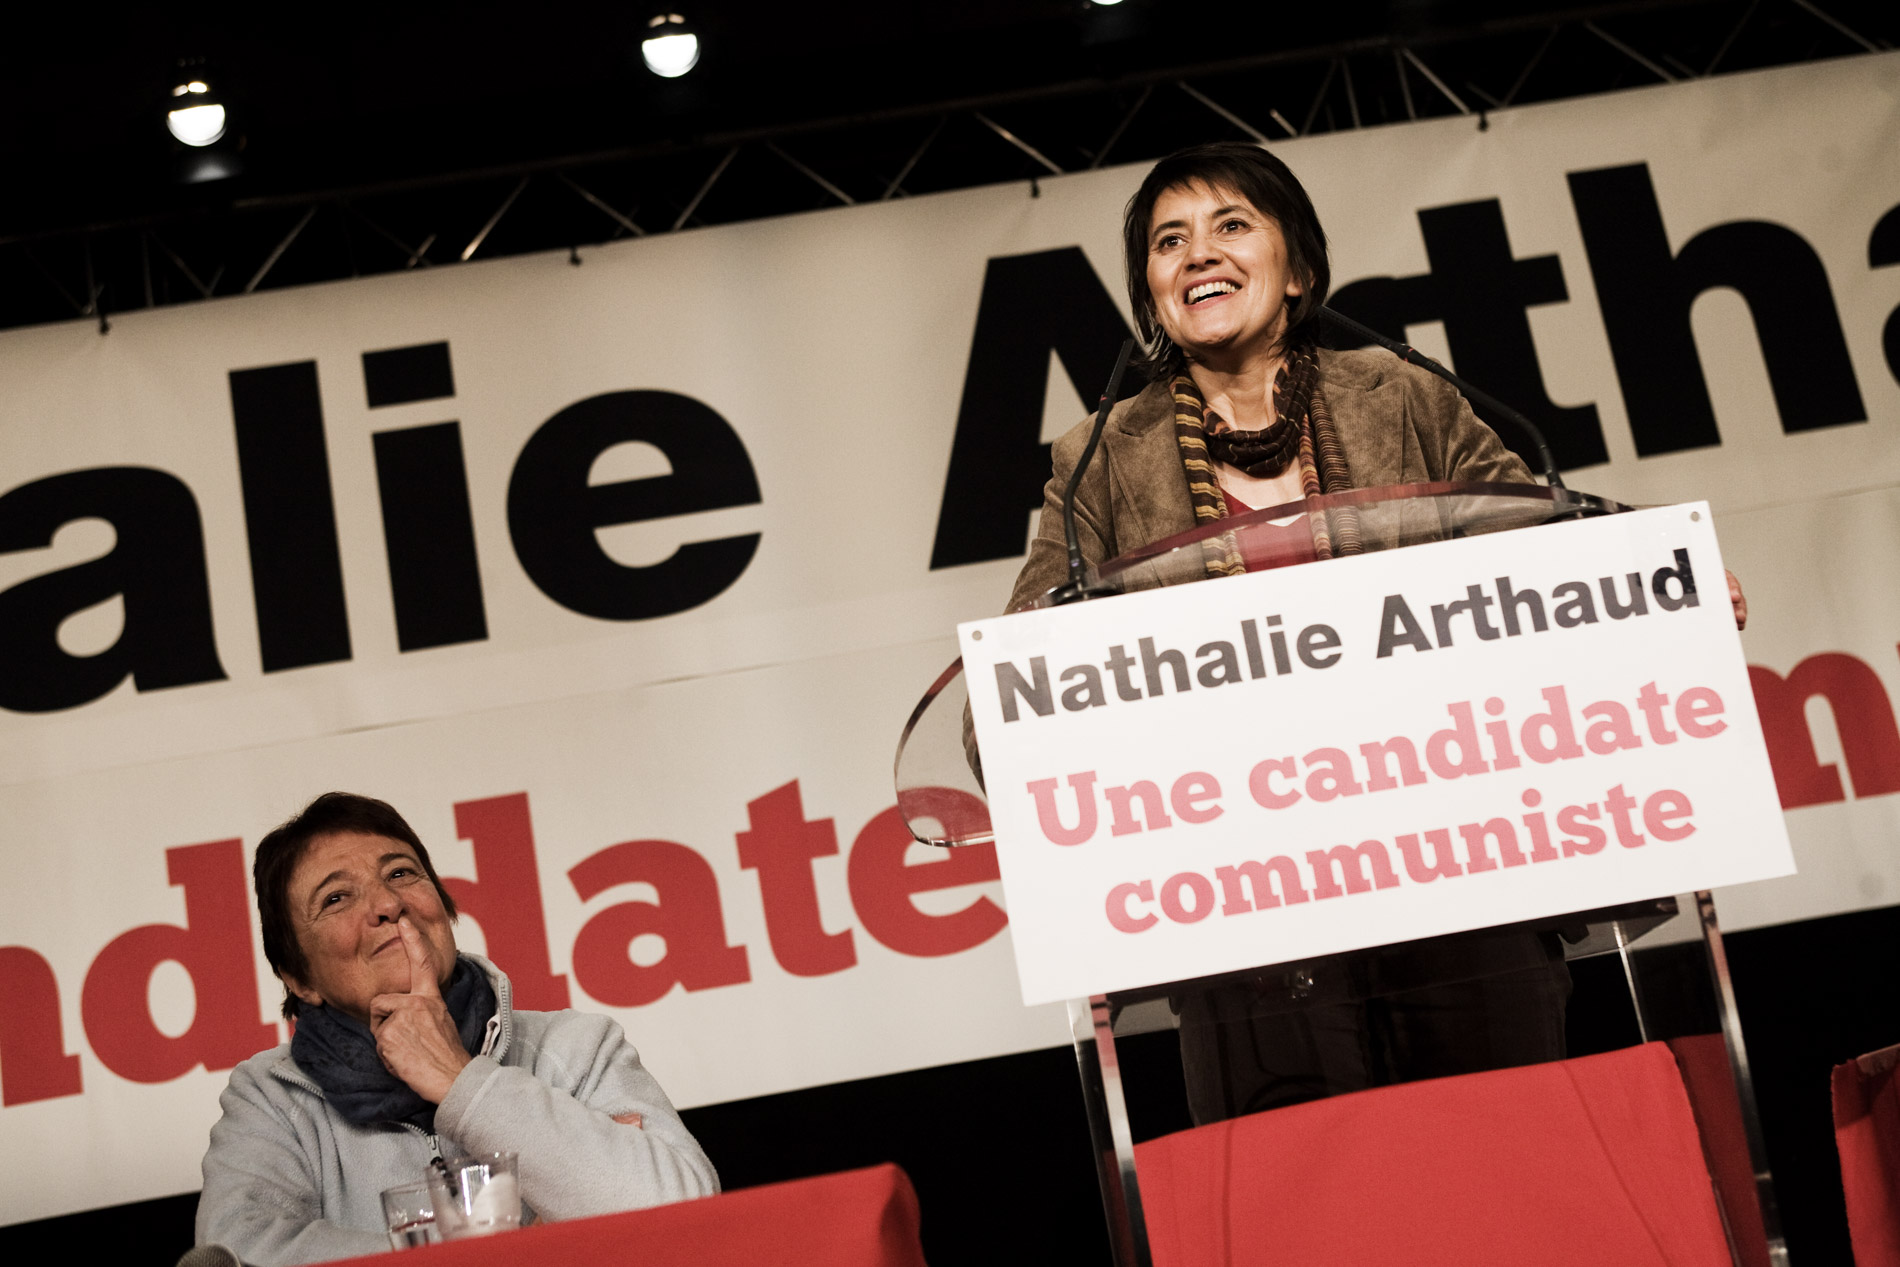 Meeting de Nathalie Arthaud, porte parole de Lutte Ouvriere et candidate a l'election presidentielle le 3 fevrier 2012 a Montreuil